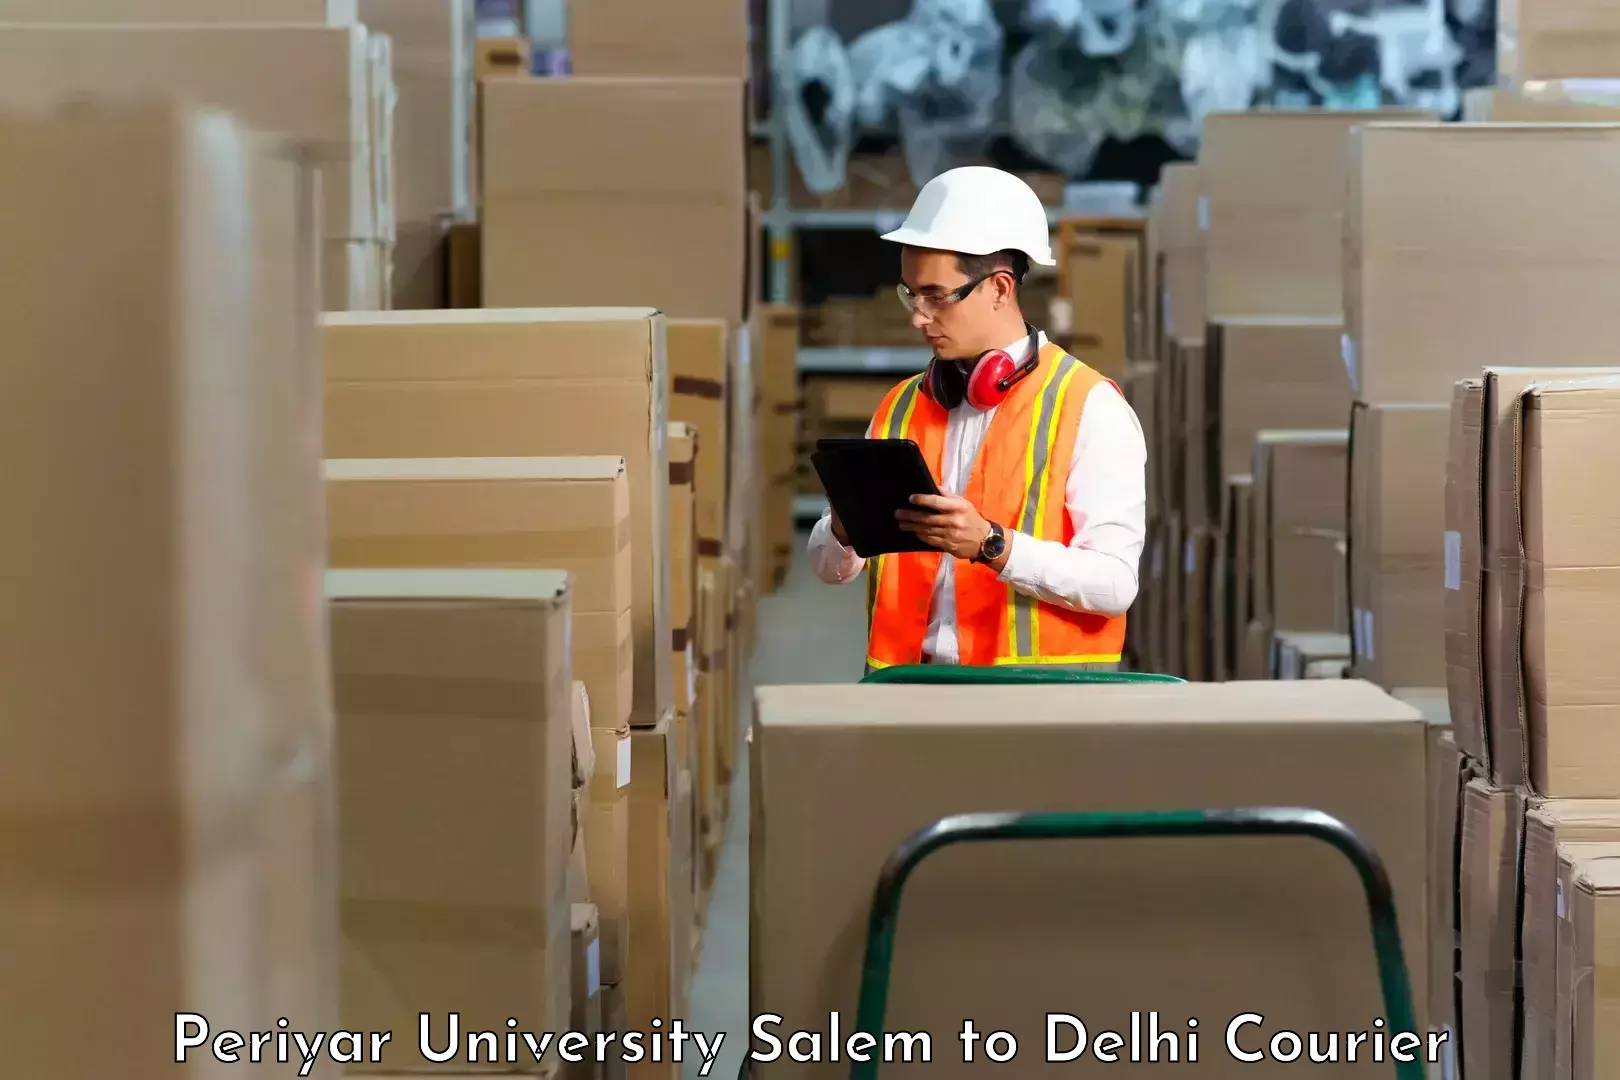 Fast-track shipping solutions Periyar University Salem to Burari